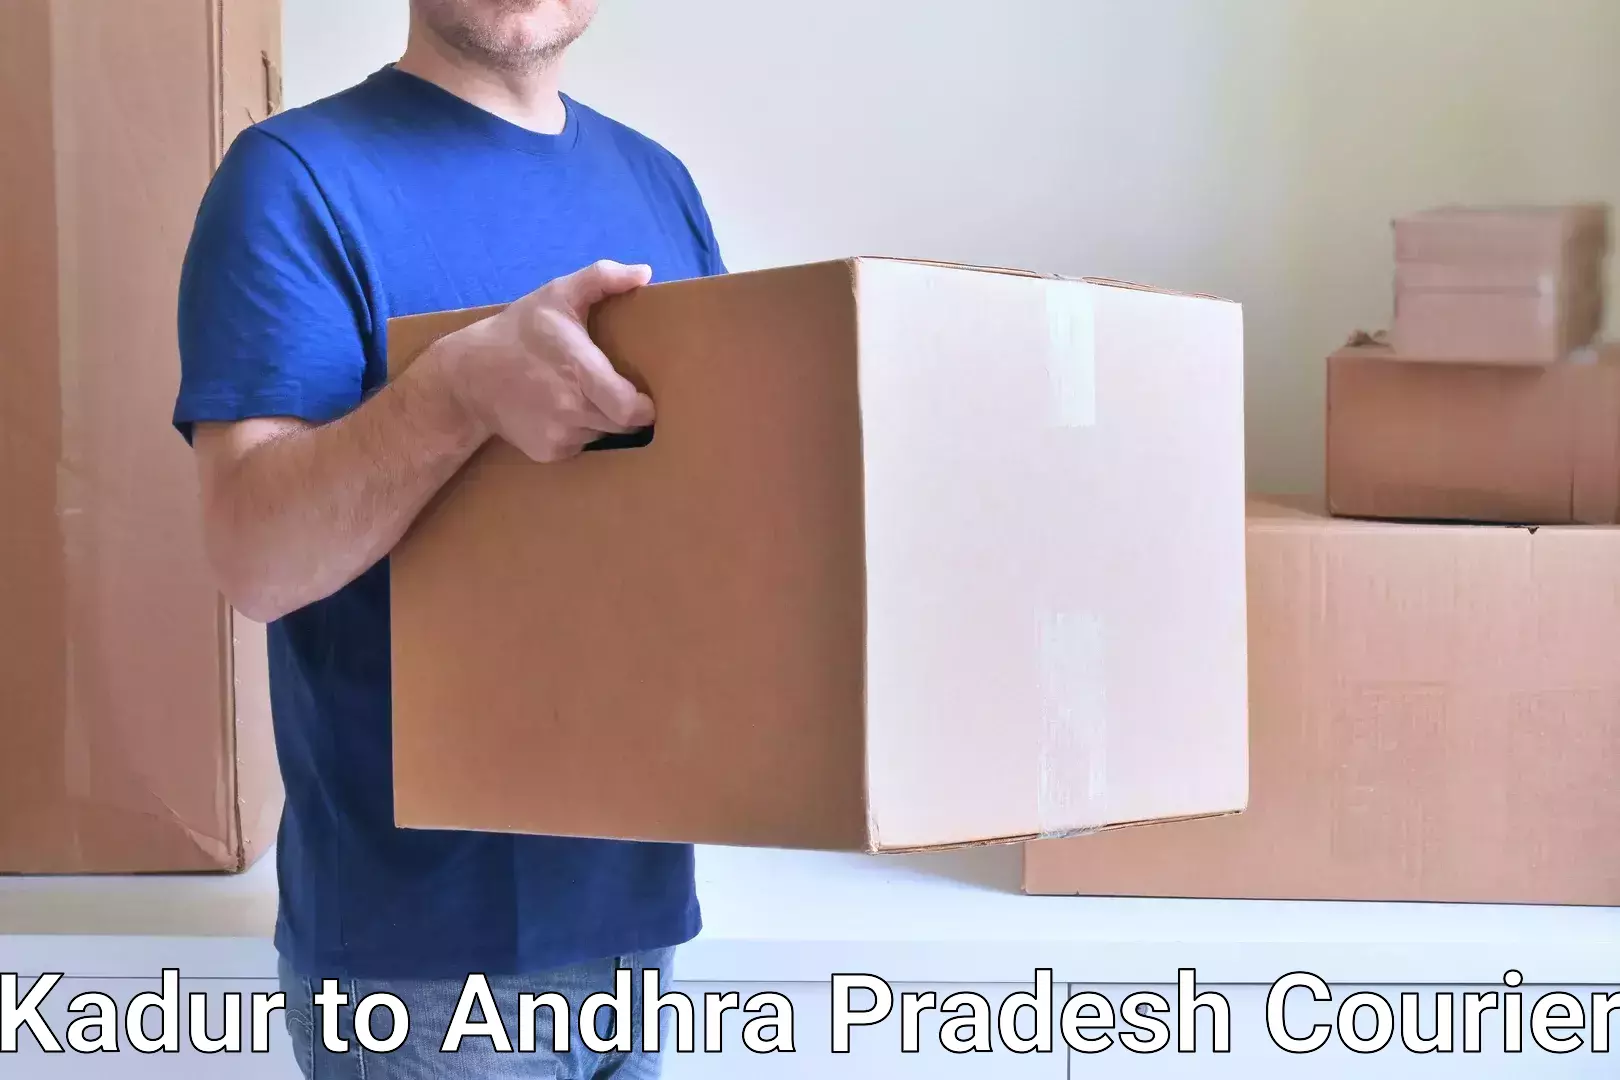 Personalized courier experiences Kadur to Andhra Pradesh